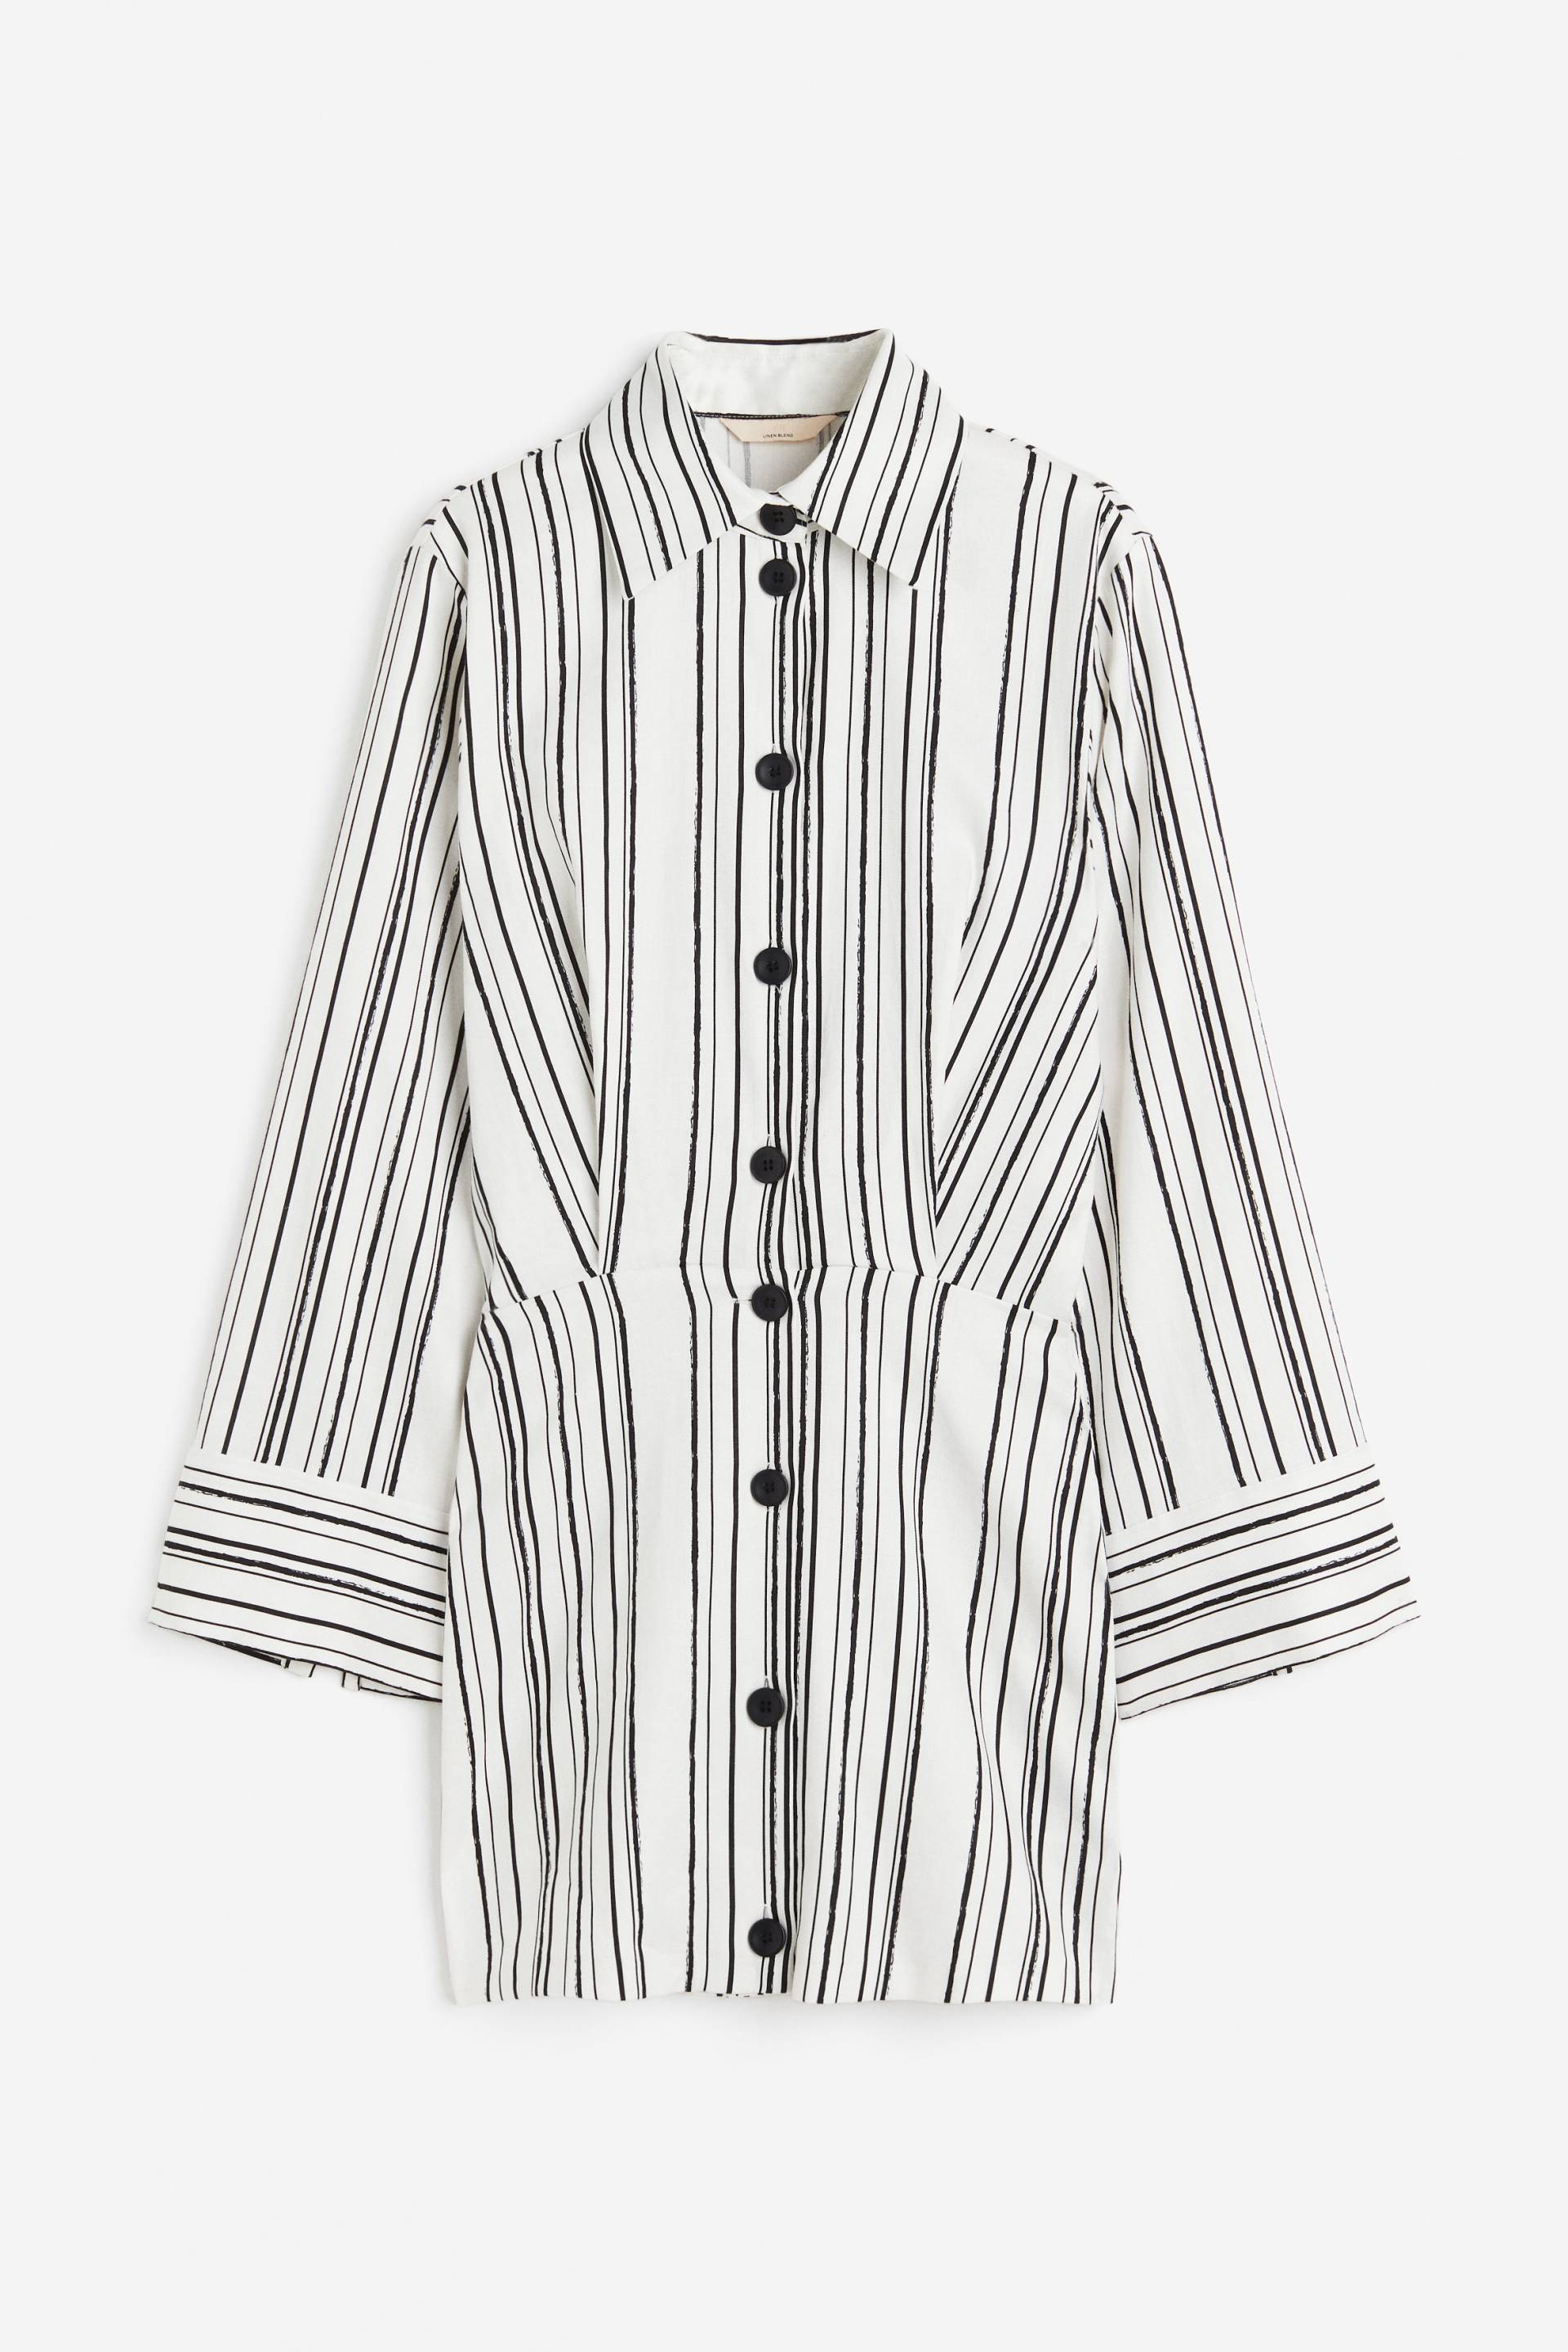 H&M Blusenkleid aus Leinenmix Weiß/Gestreift, Alltagskleider in Größe 42. Farbe: White/striped von H&M